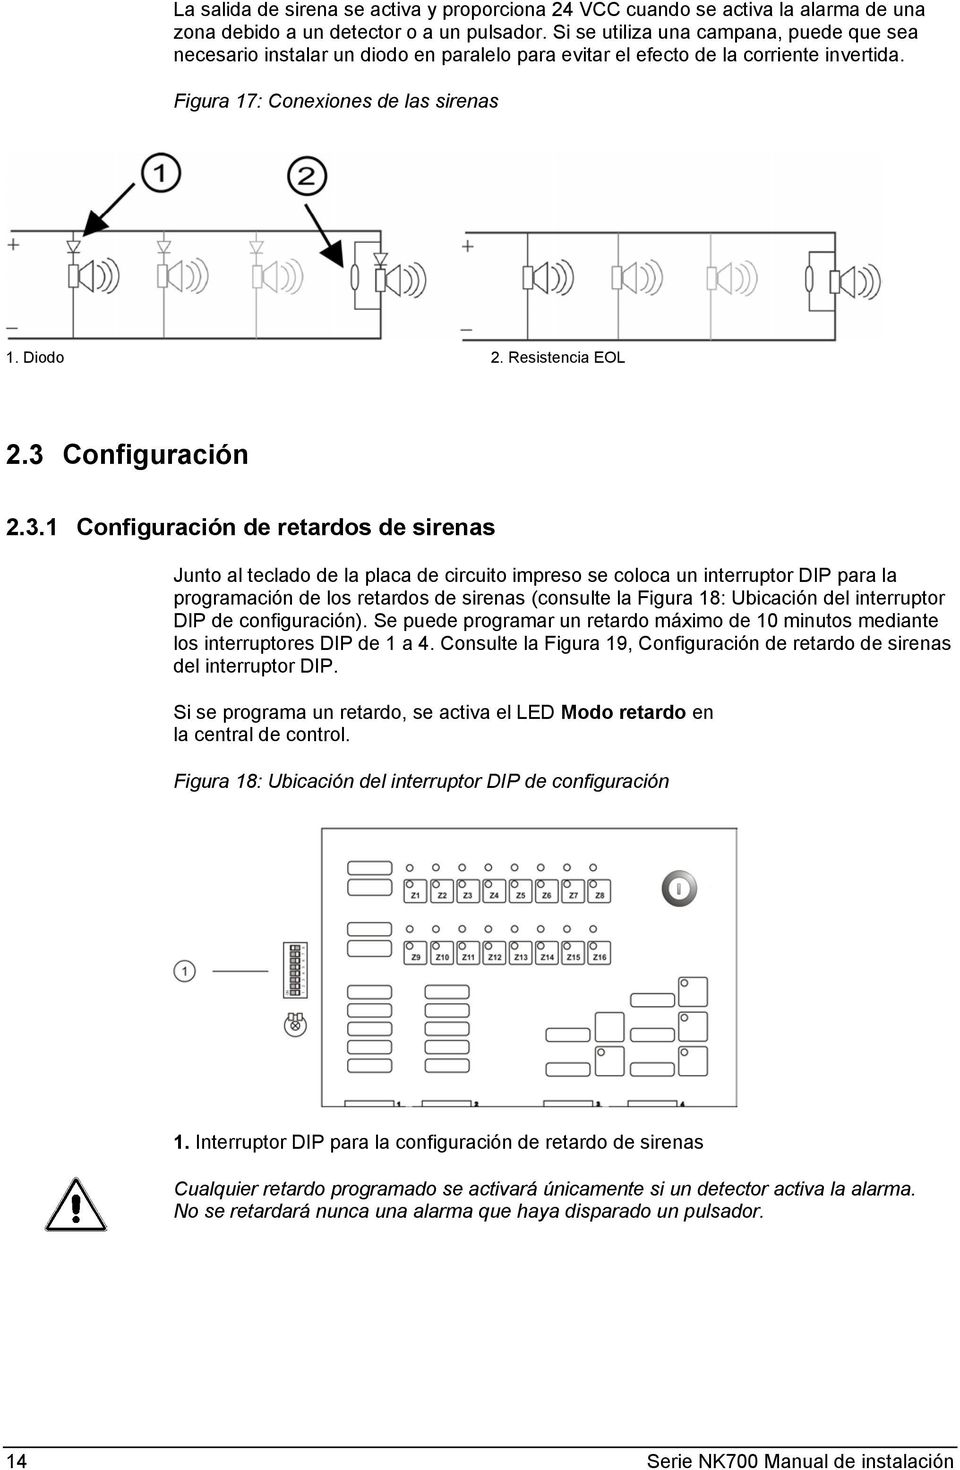 3 Configuración 2.3.1 Configuración de retardos de sirenas Junto al teclado de la placa de circuito impreso se coloca un interruptor DIP para la programación de los retardos de sirenas (consulte la